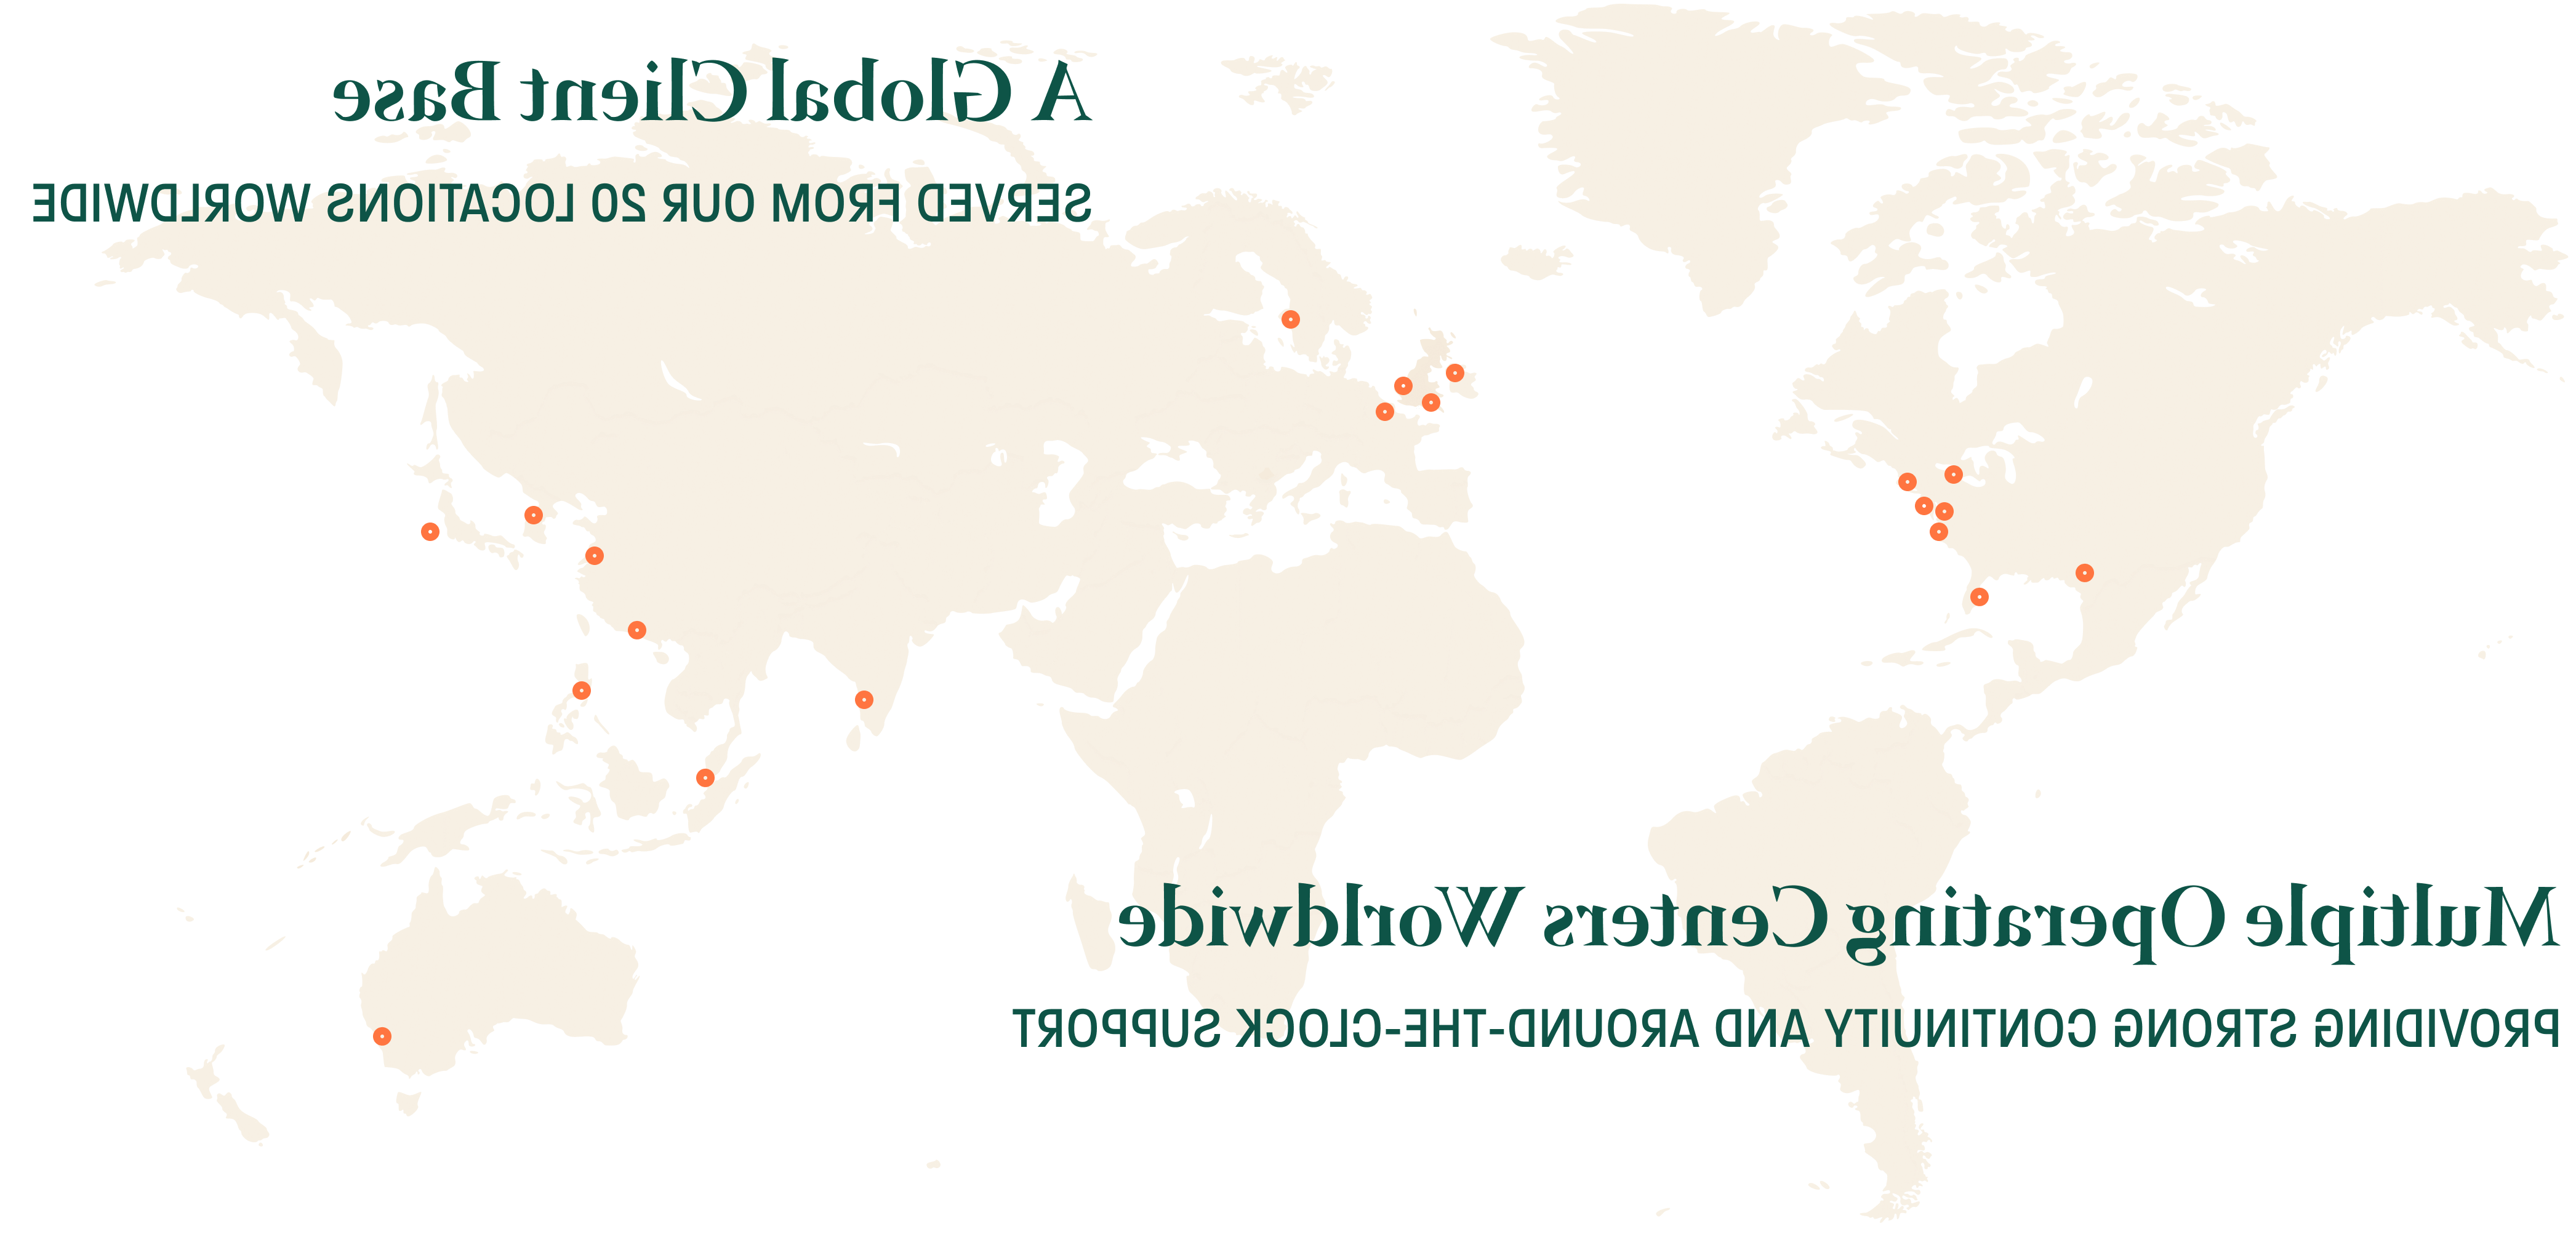 存 Operating Centers, Worldwide